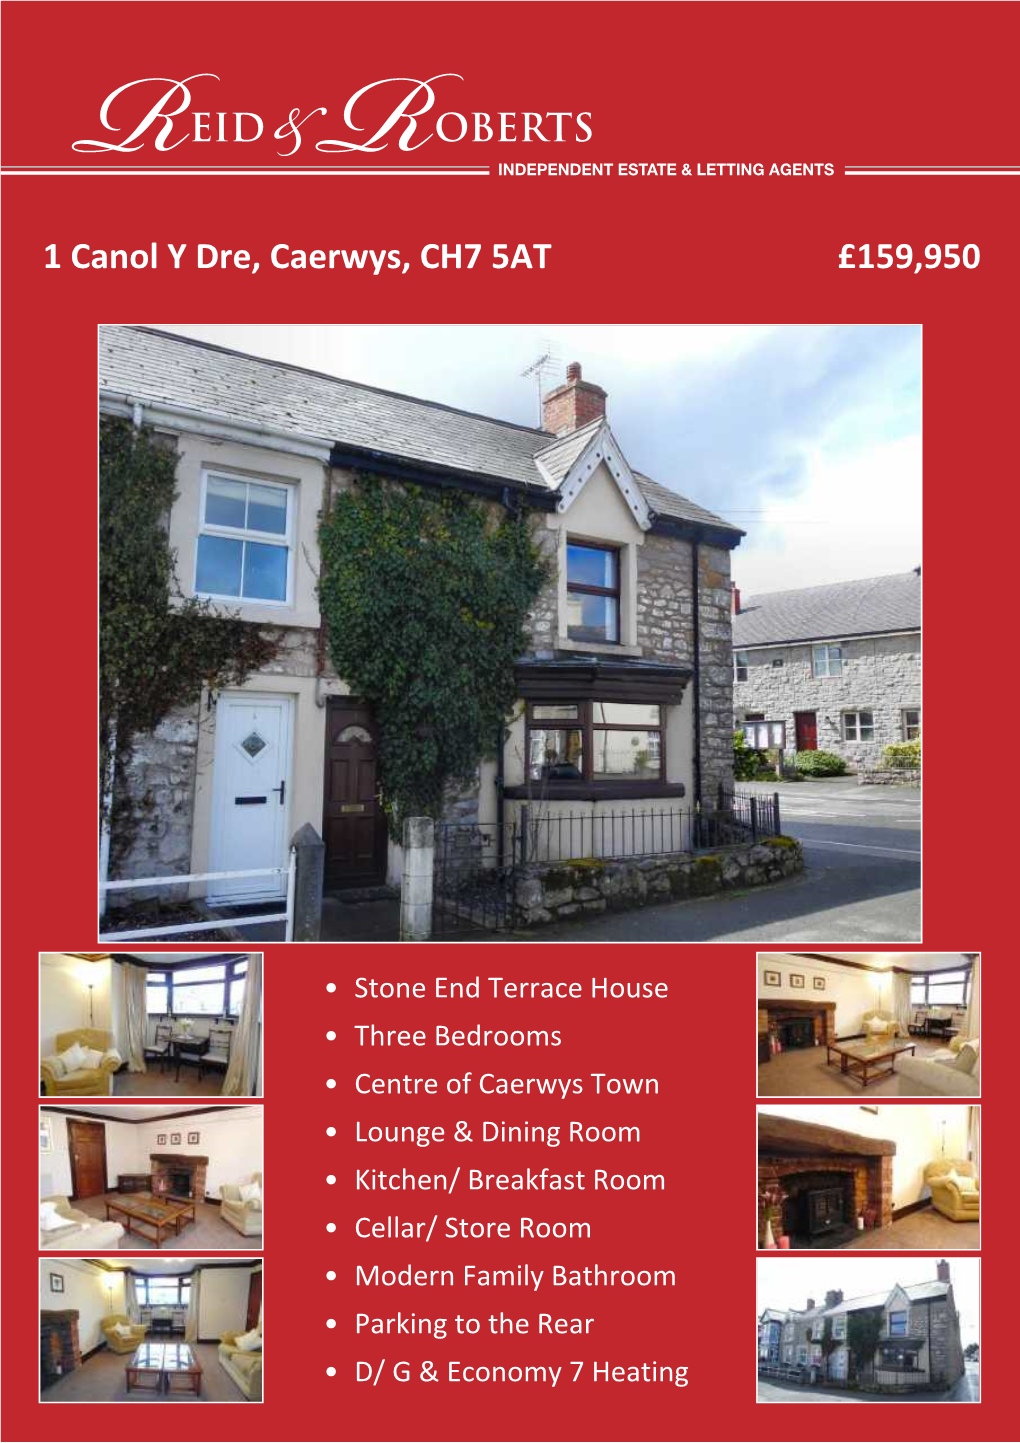 1 Canol Y Dre, Caerwys, CH7 5AT £159,950